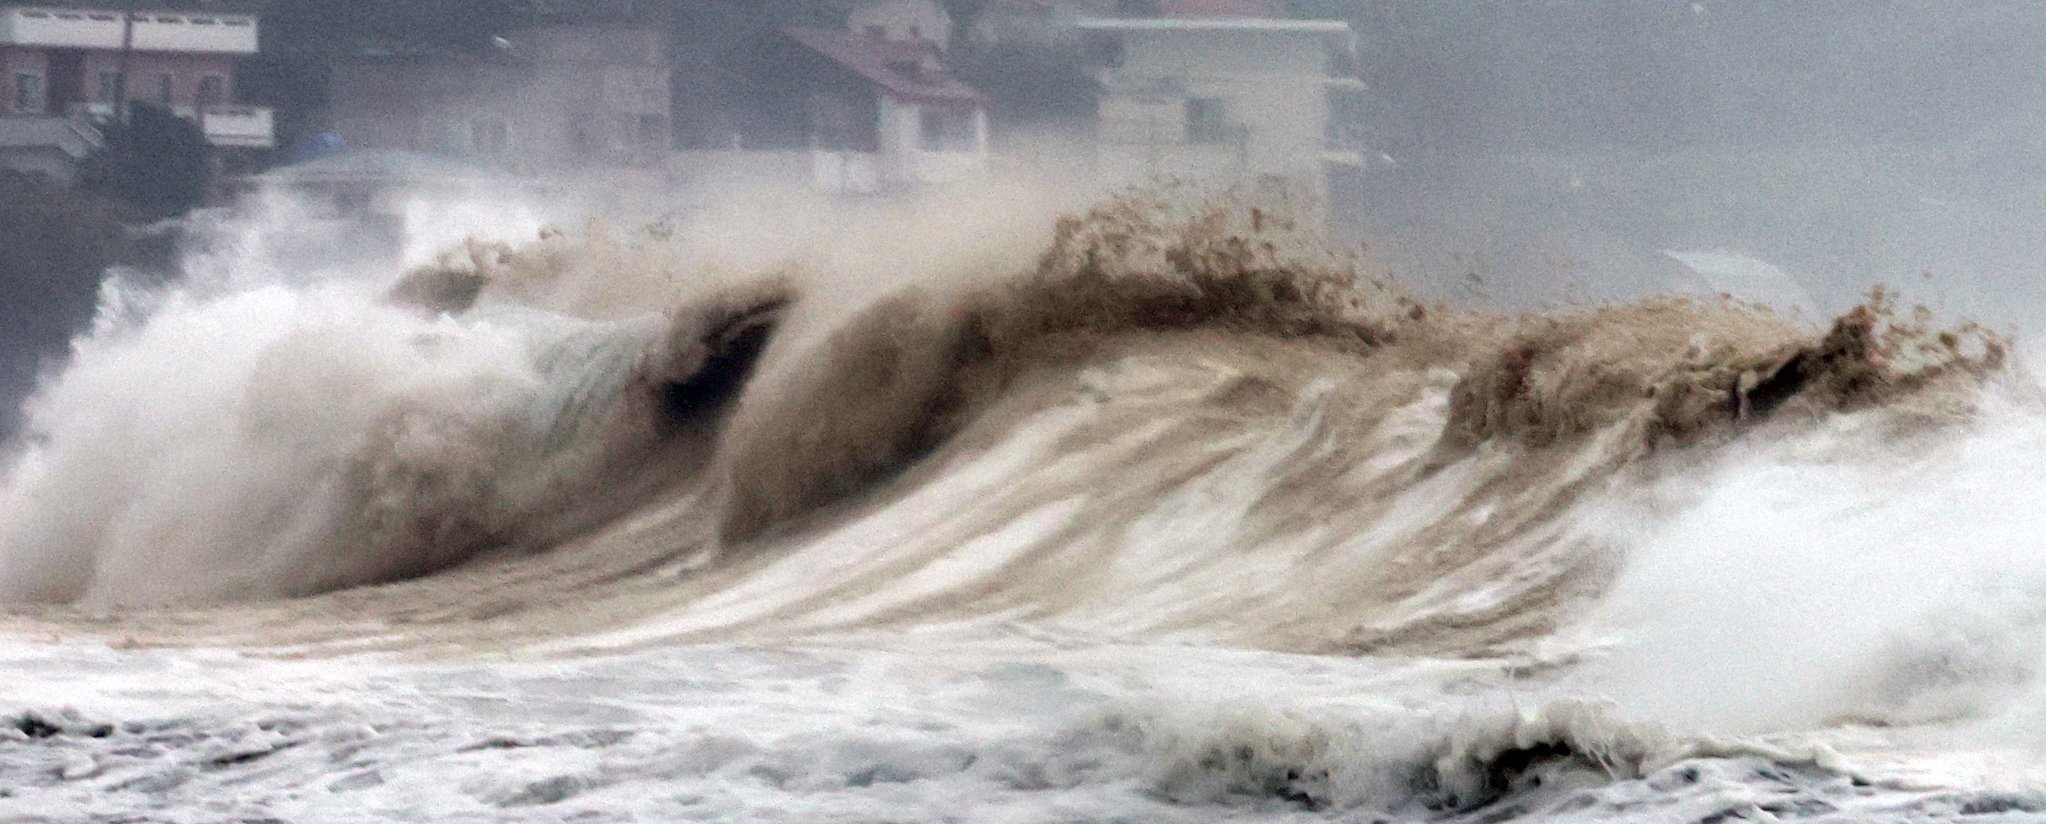 태풍 힌남노가 한반도를 향해 북상 중인 5일 오전 제주도 서귀포 해안에 파도가 치고 있다.연합뉴스